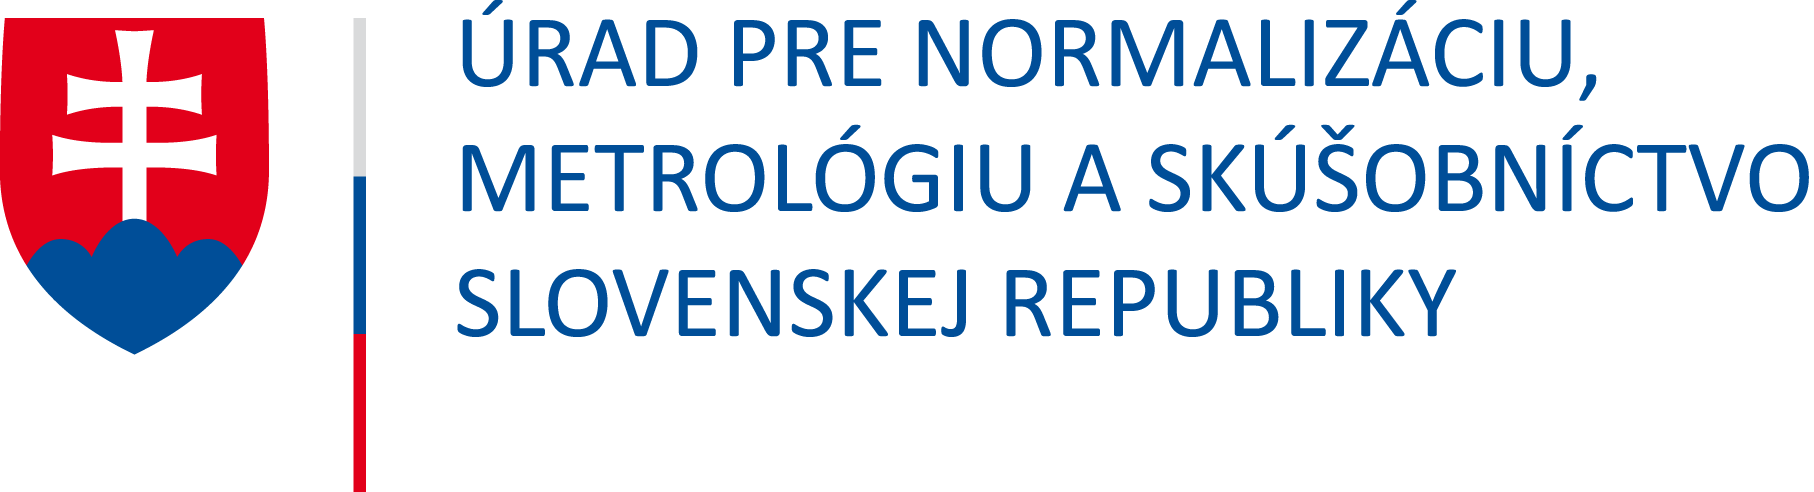 Úrad pre normalizáciu, metrológiu a skúšobníctvo Slovenskej republiky